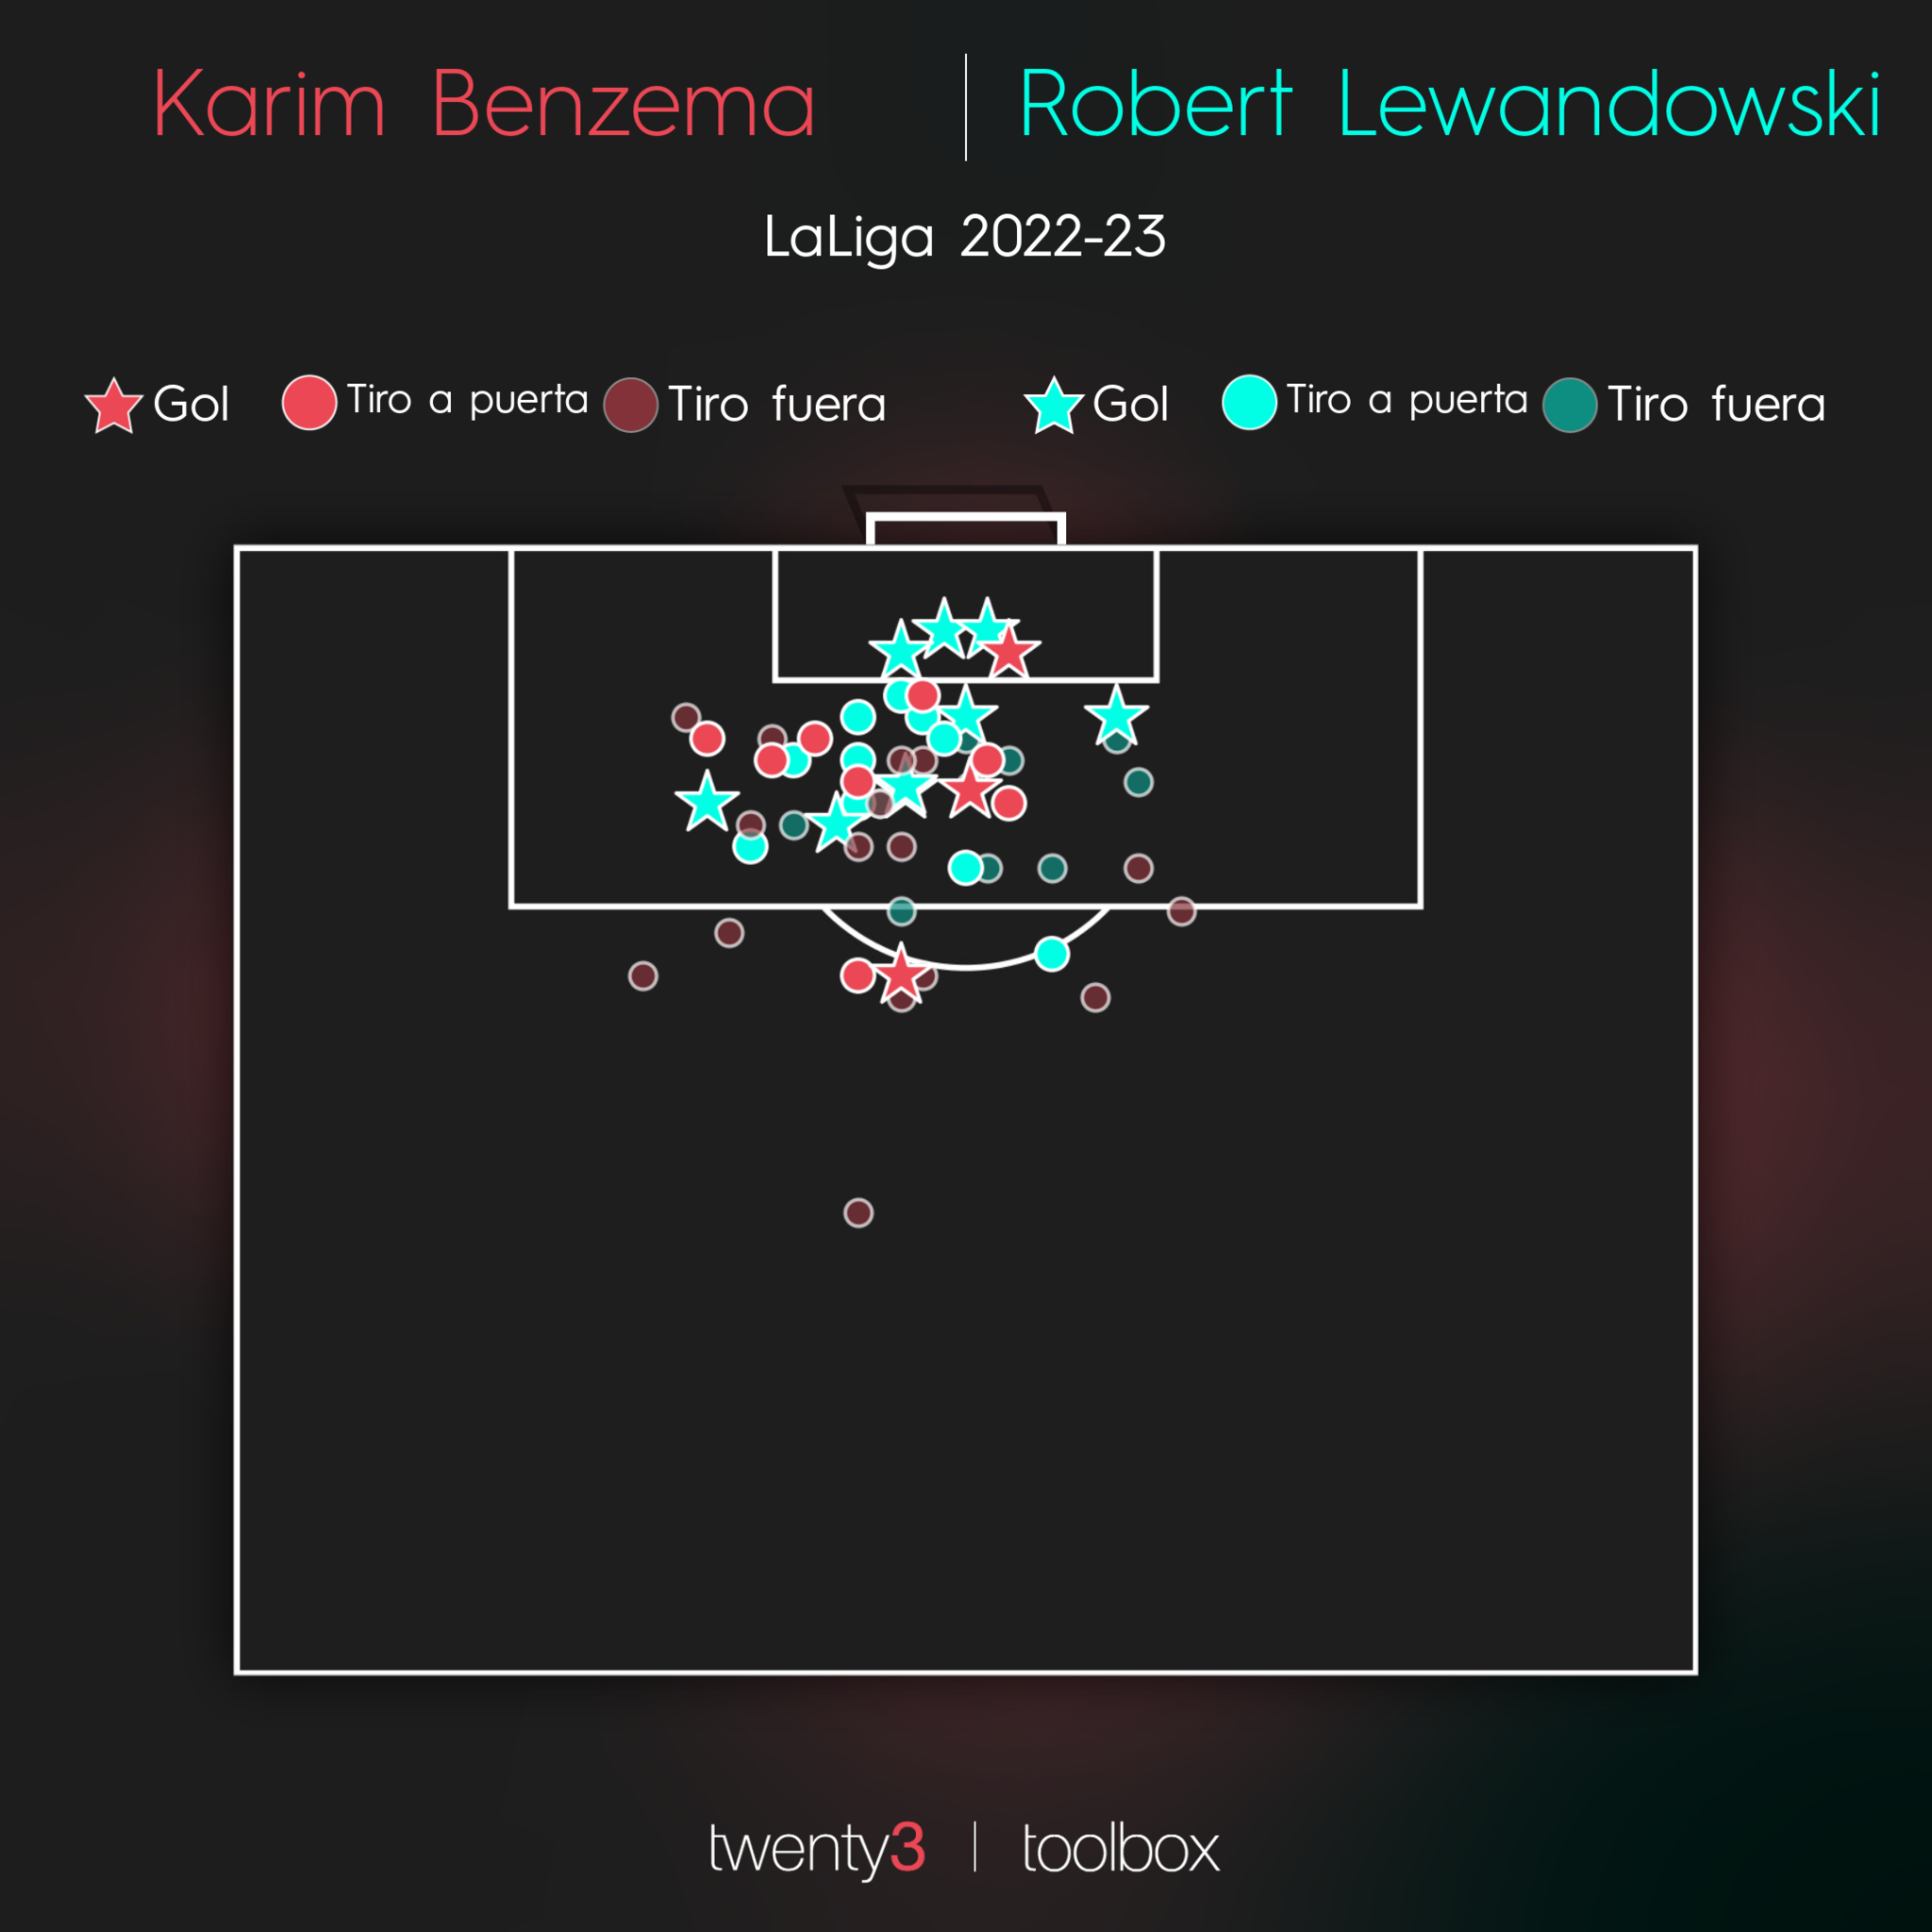 Zonas de disparo de Benzema y Lewandowski en LaLiga 2022-23